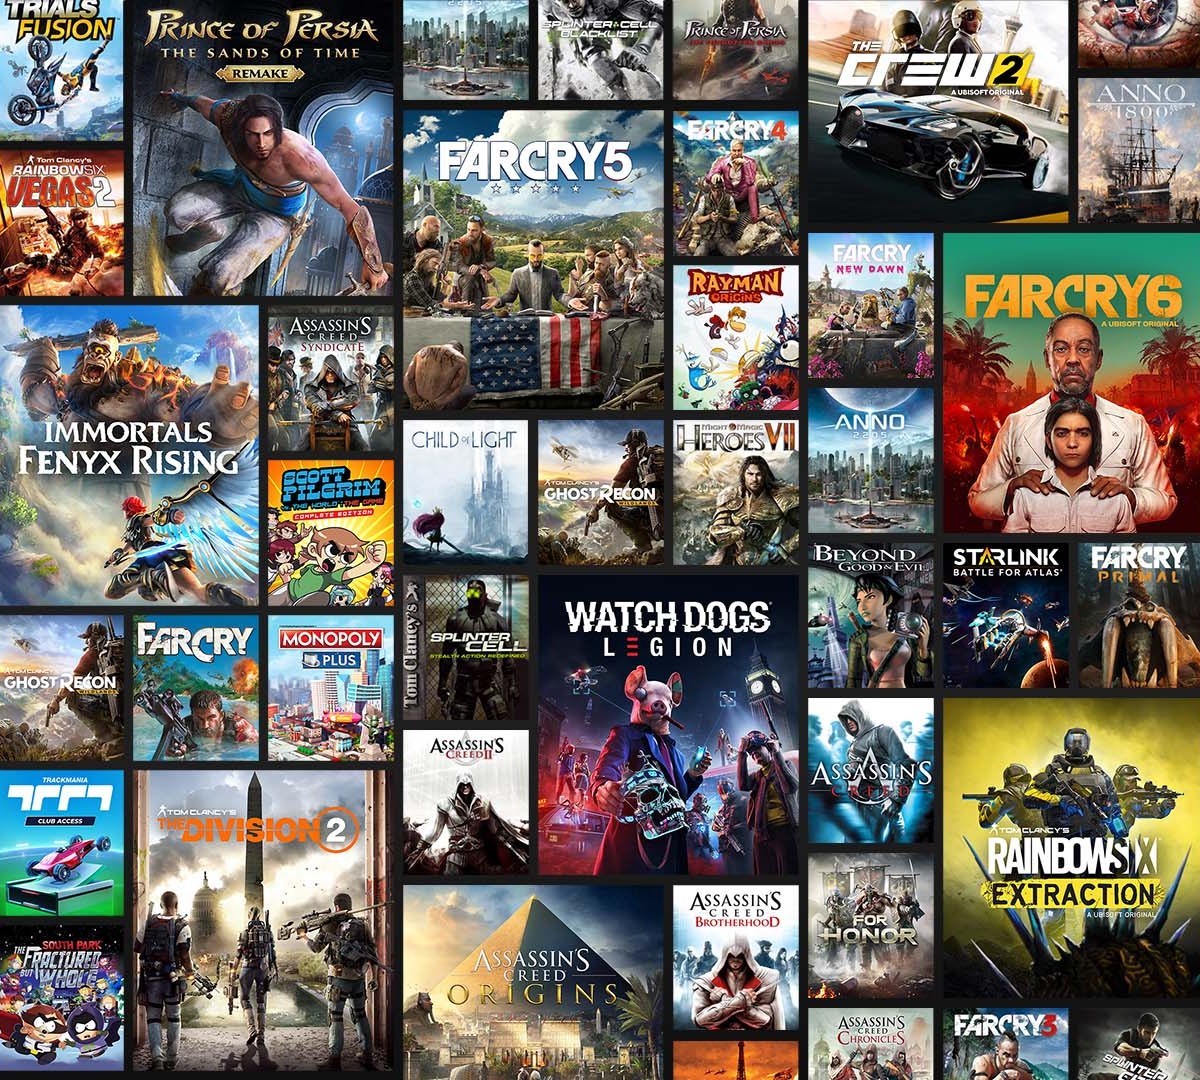 Rival do Xbox Game Pass, UPlay+ revela seu catálogo de jogos - Windows Club